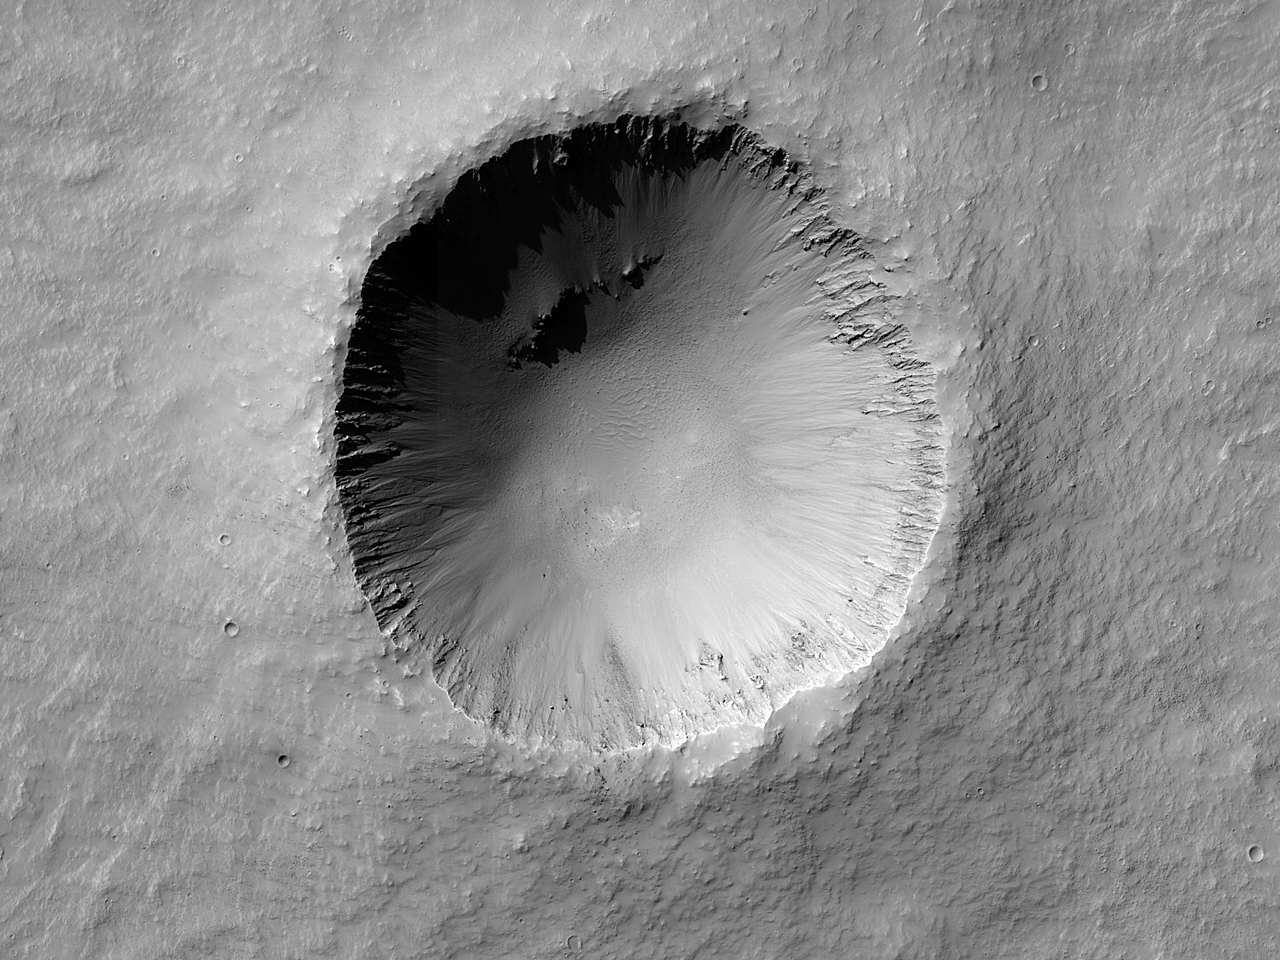 Bir çarpma kraterindeki eğimin gözlemi